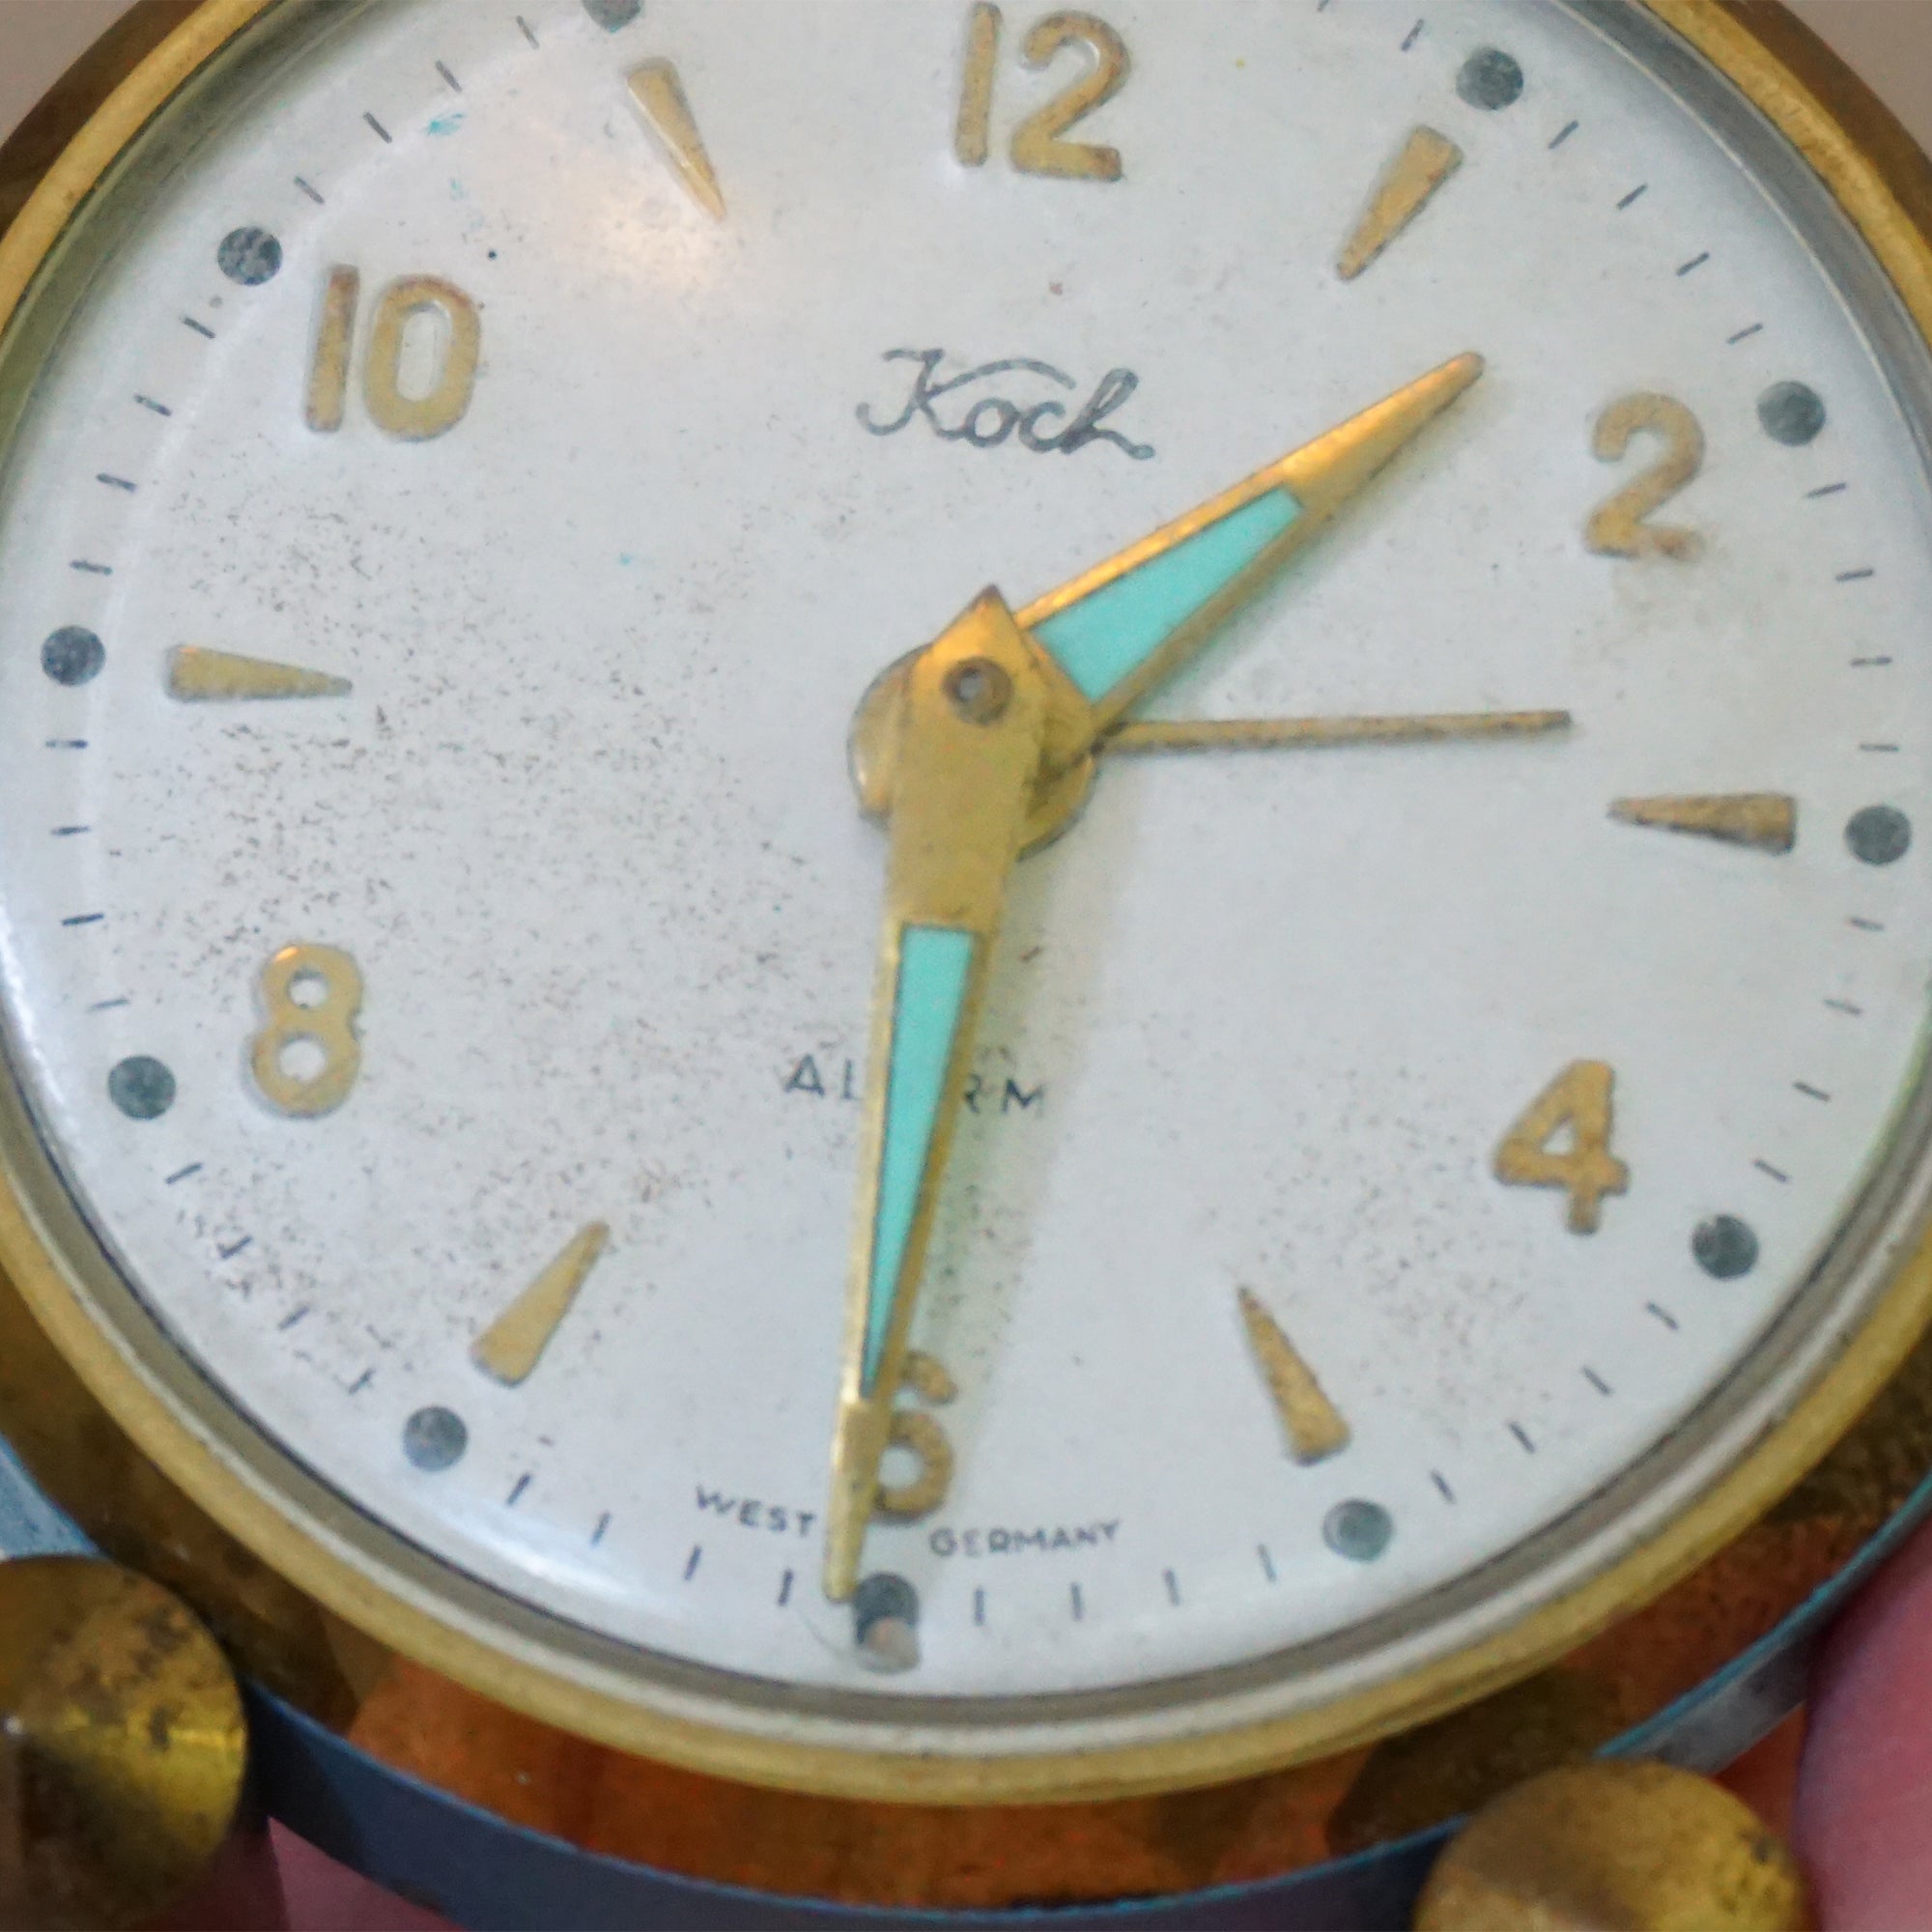 Vintage KOCH Desk/Bedside Gold Tone Teal Wind-up Alarm Clock. Made in West Germany.